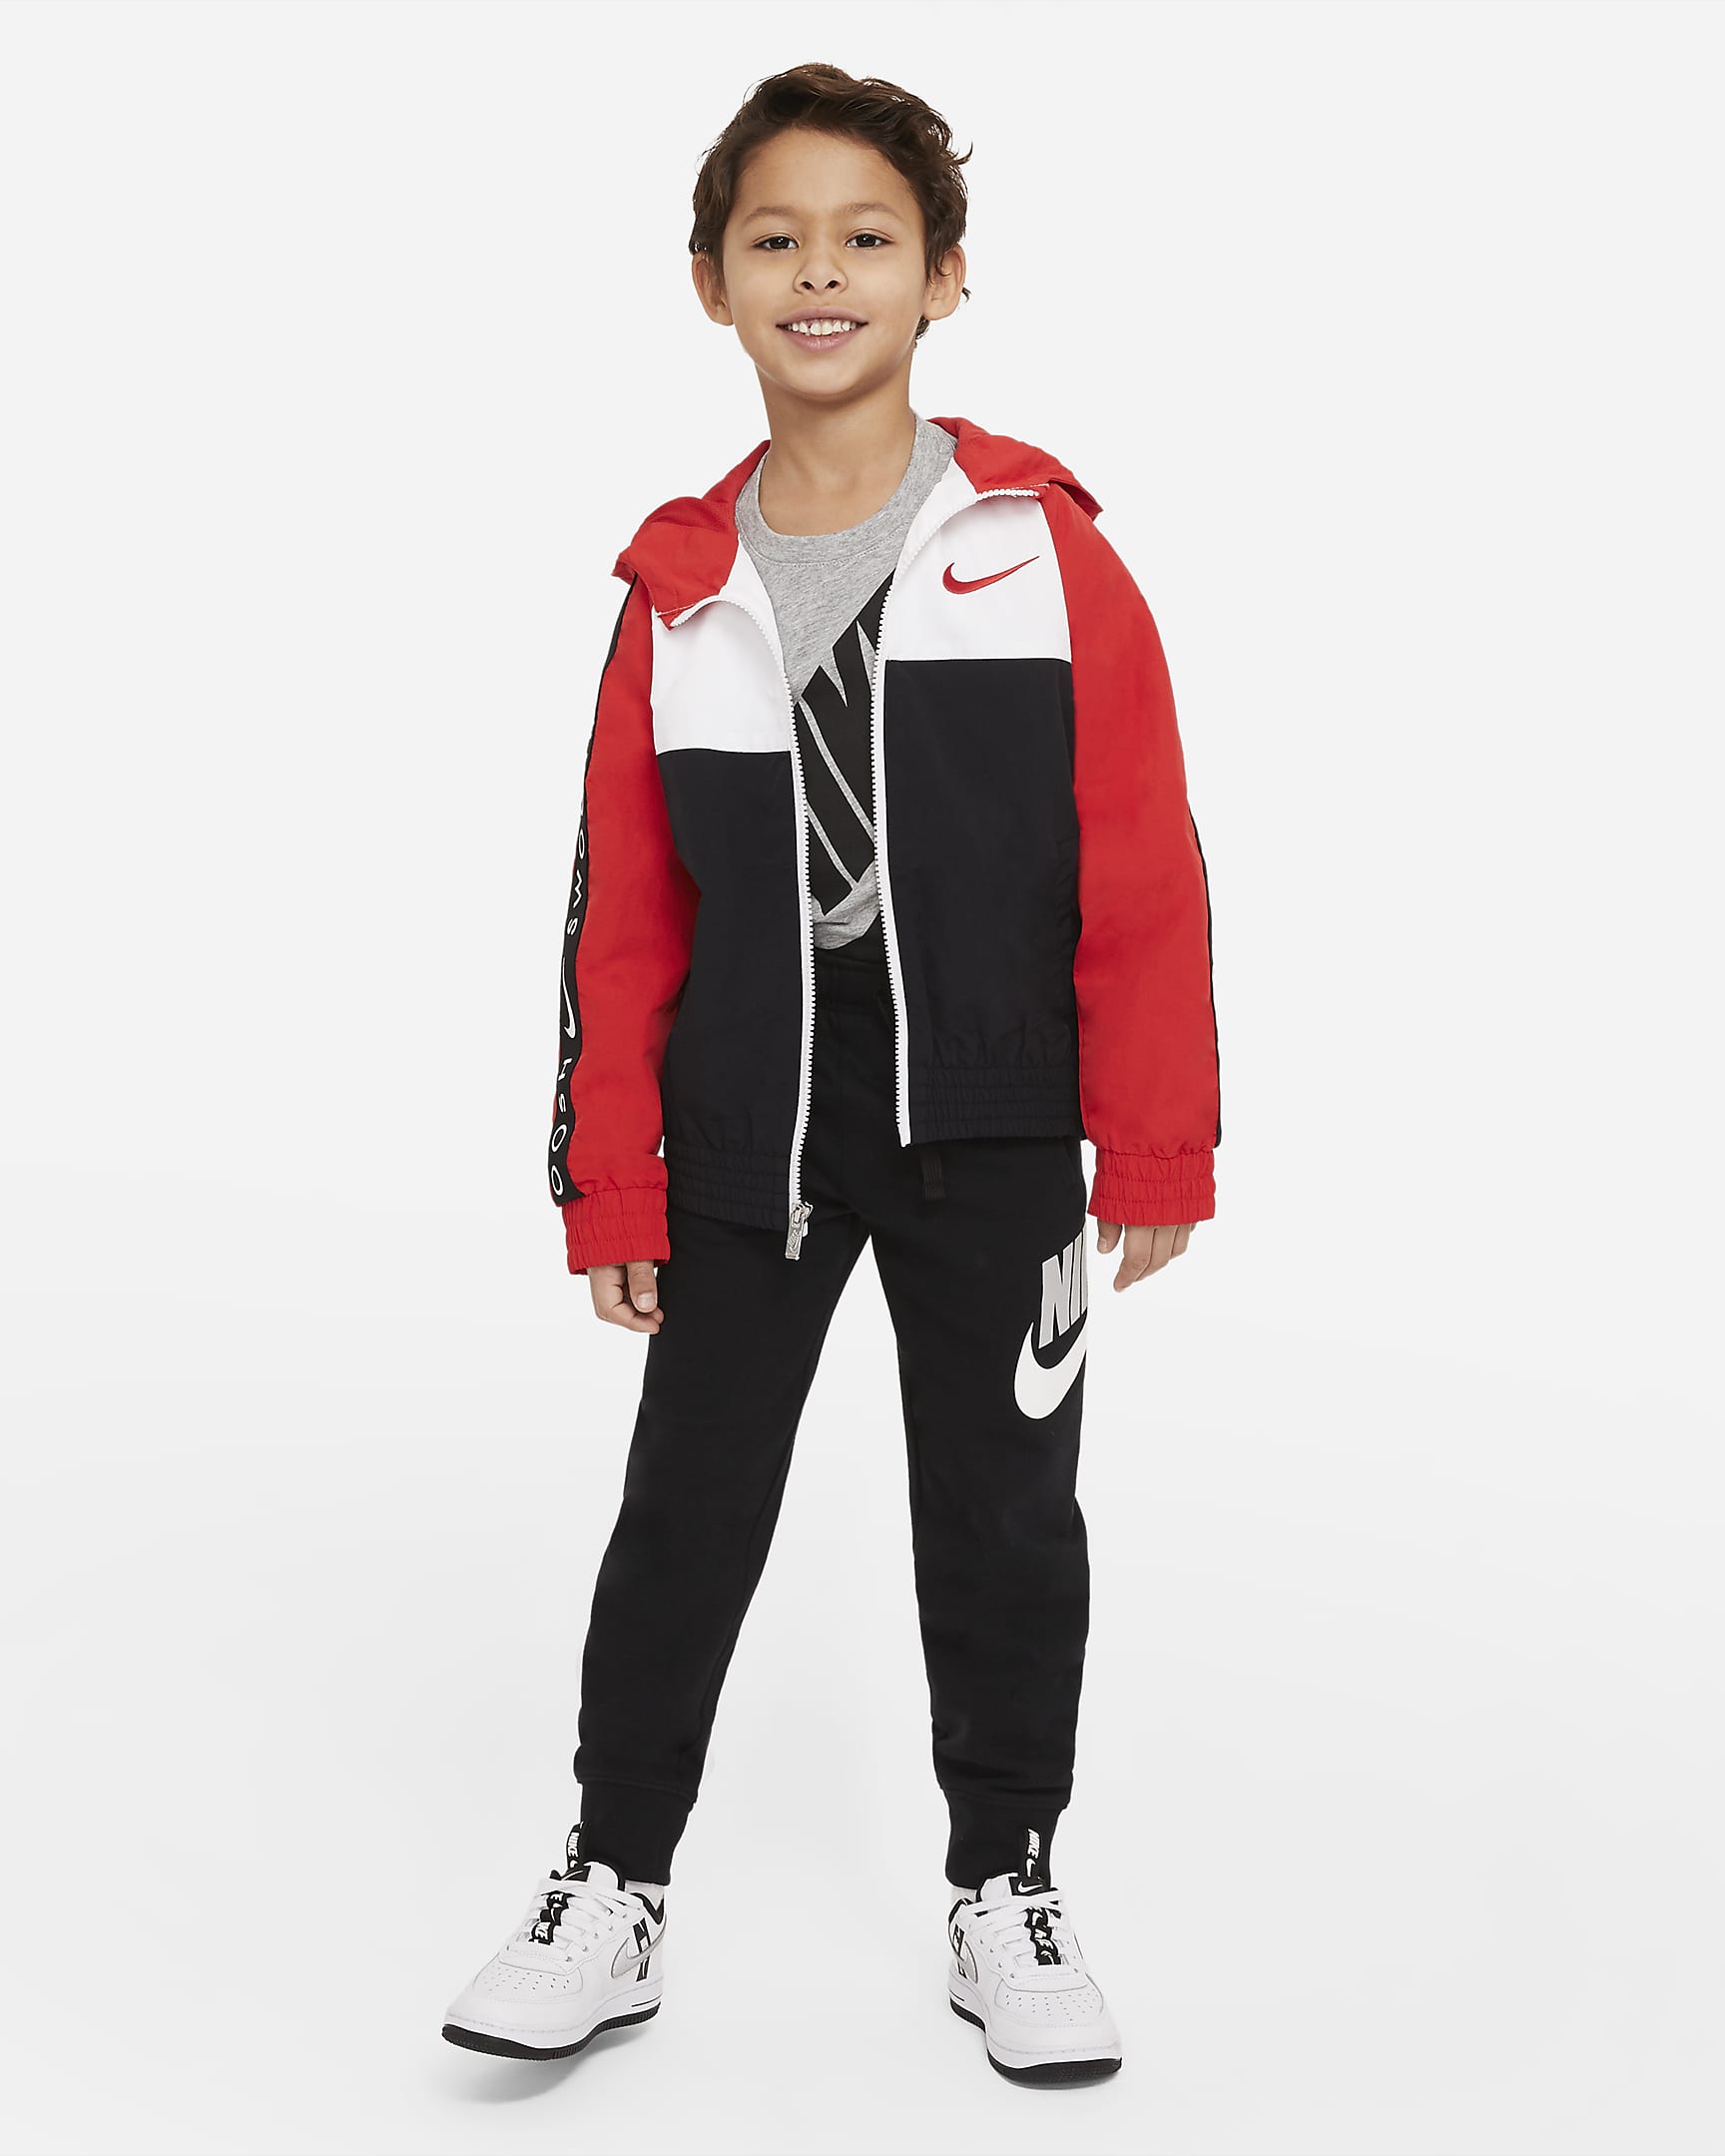 Nike Sportswear Club Fleece Little Kids' Pants. Nike.com